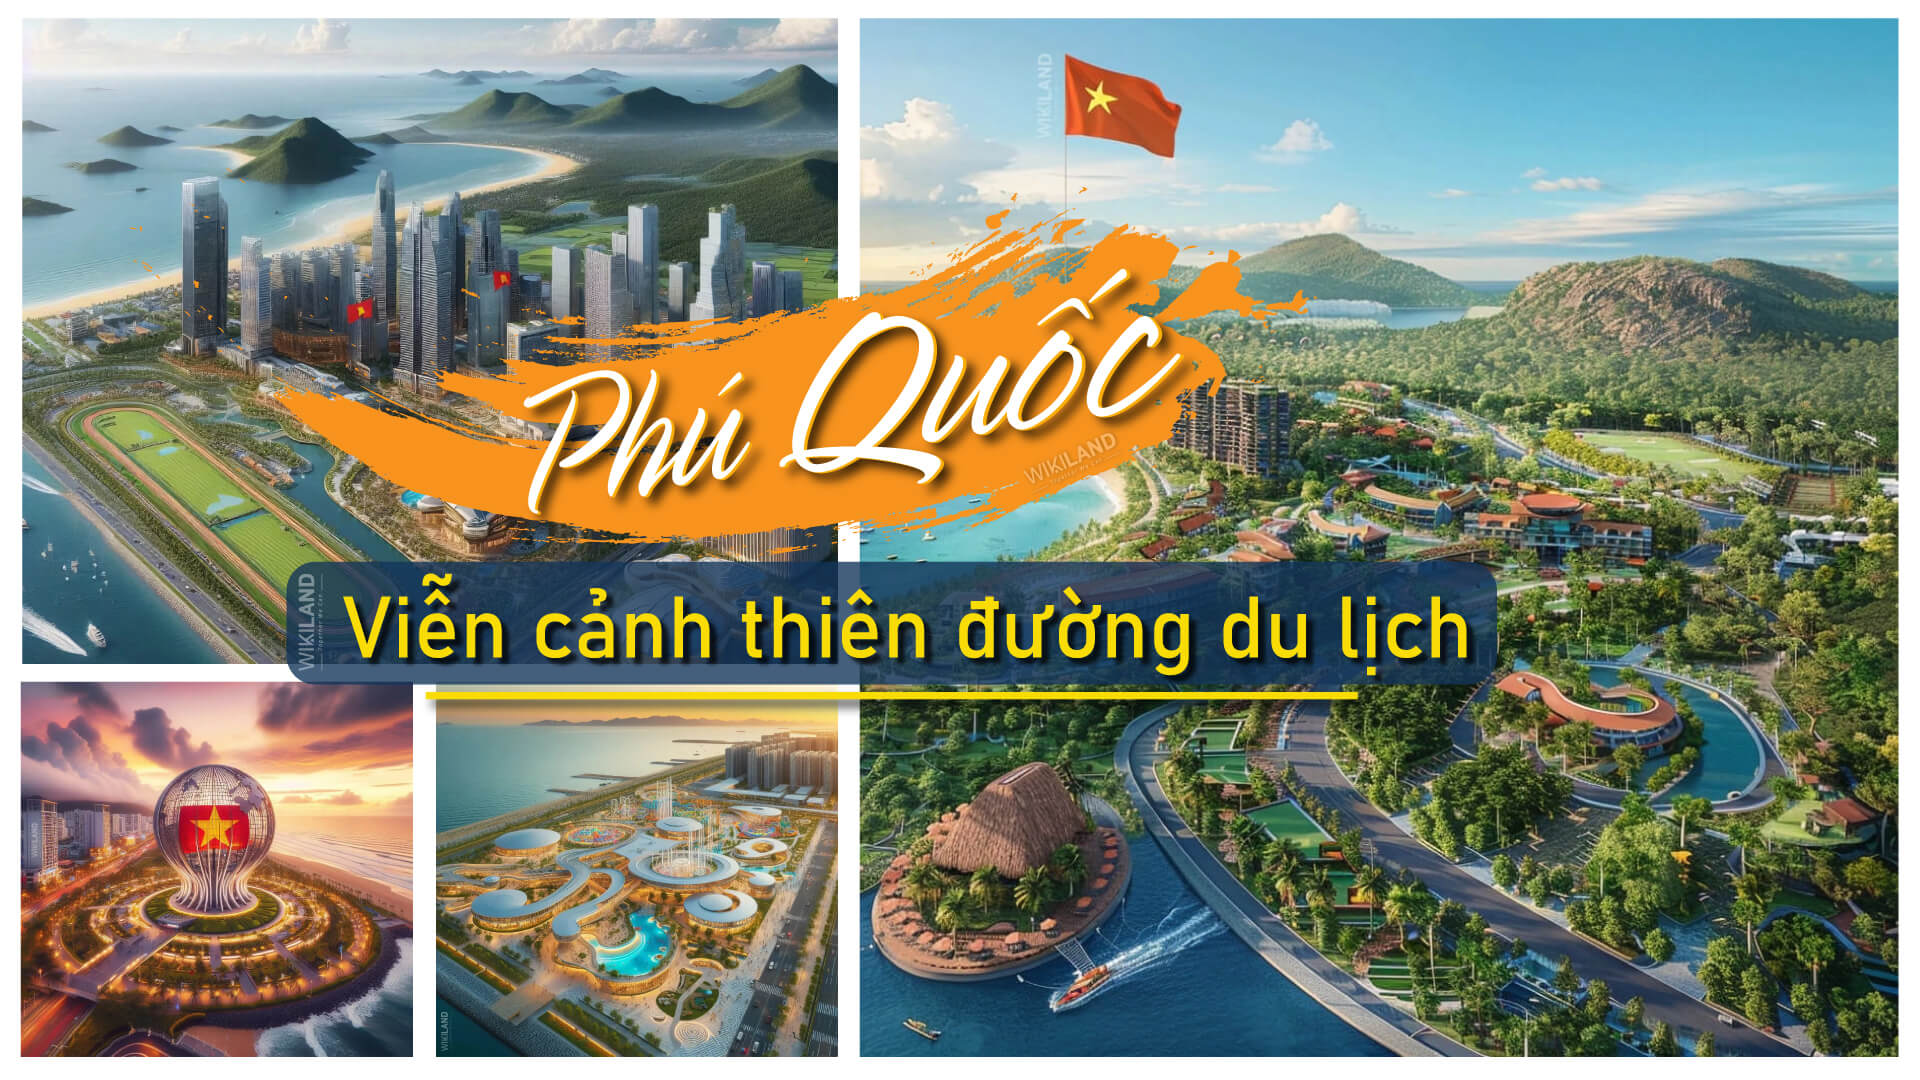 Phú quốc 2040: hành trình trở thành thiên đường du lịch với trường đua ngựa, casino, thể thao trên biển…